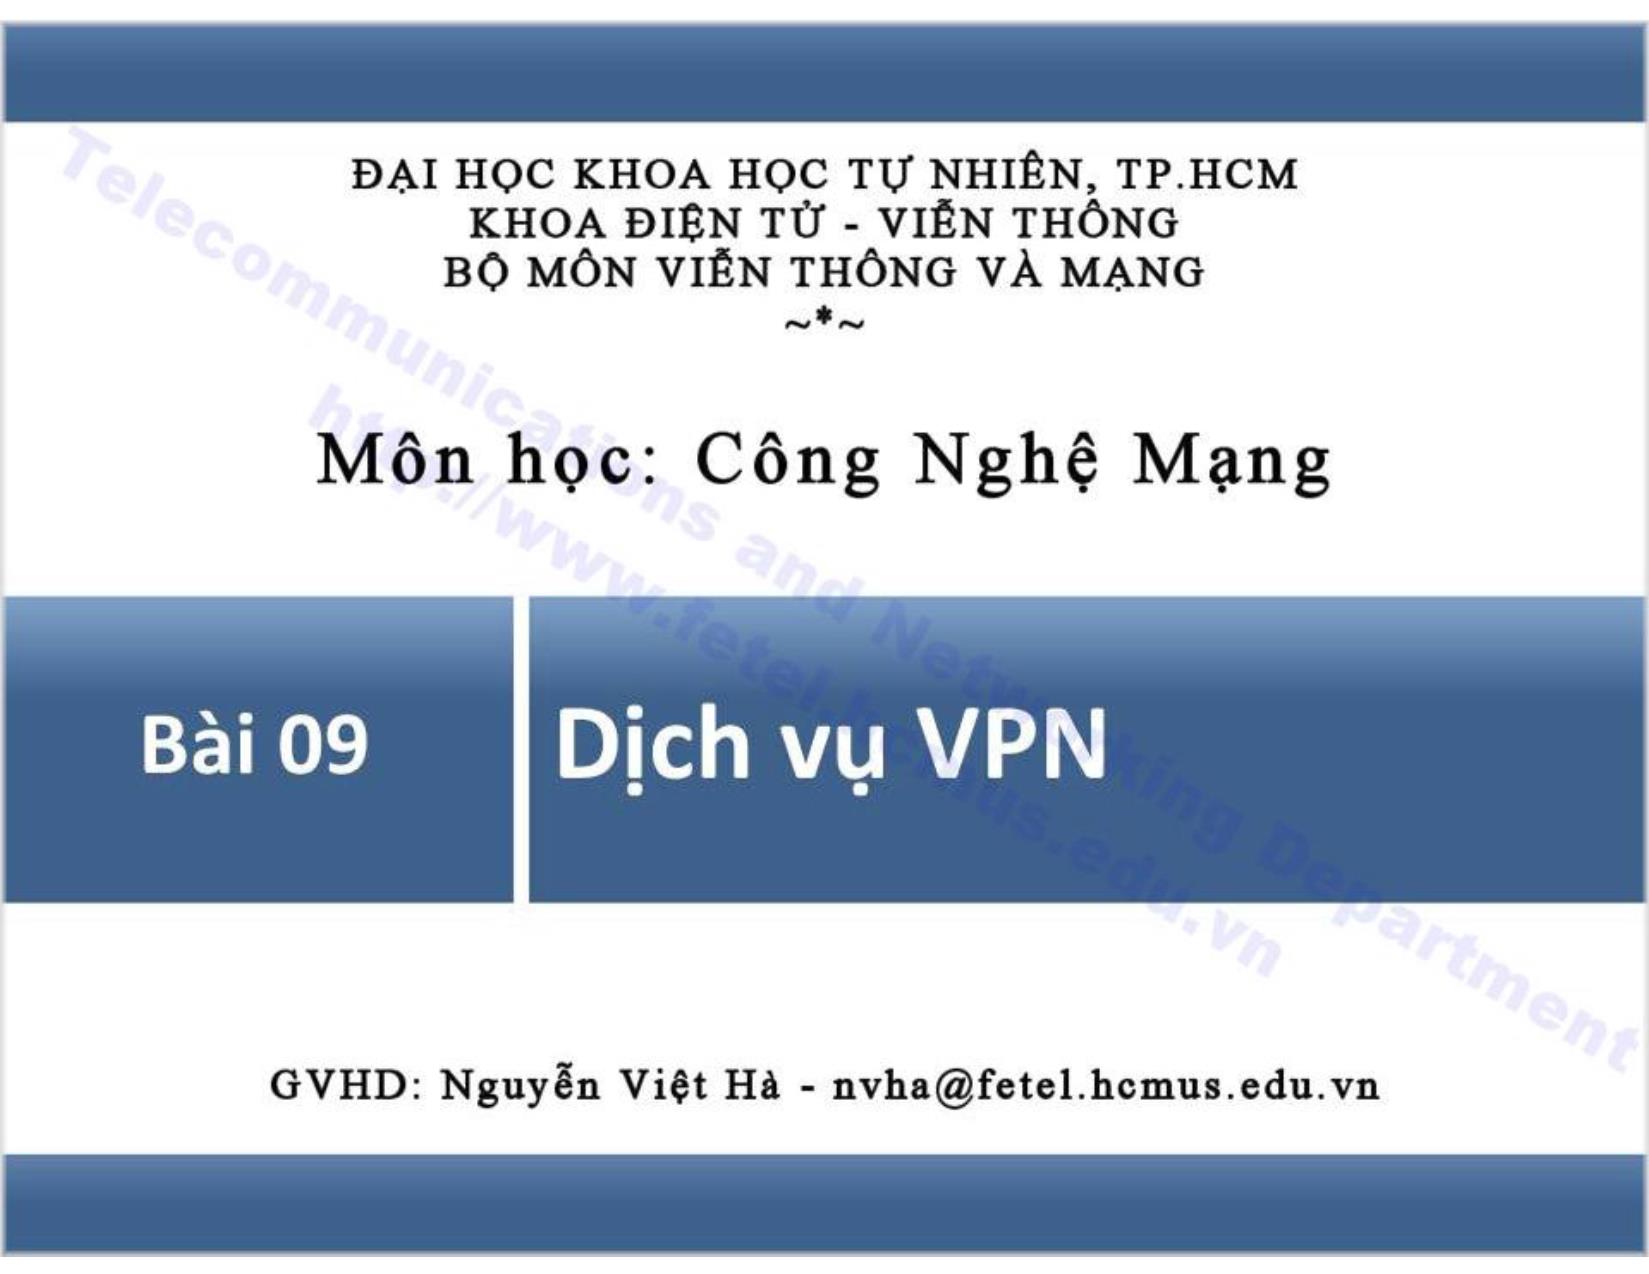 Bài giảng Công nghệ mạng - Bài 9: Dịch vụ VPN trang 1